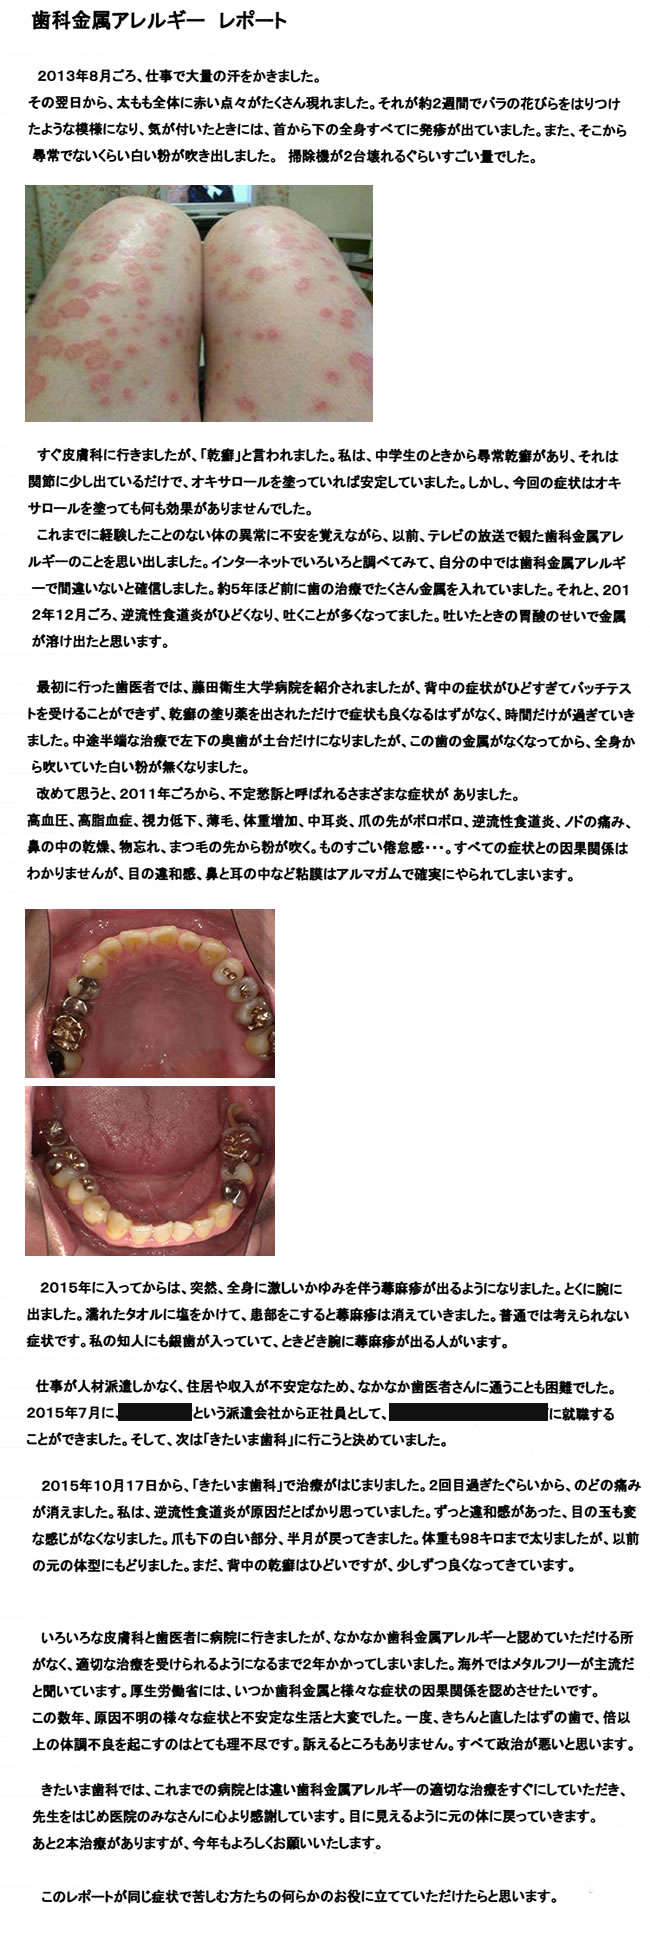 歯科金属アレルギーレポート